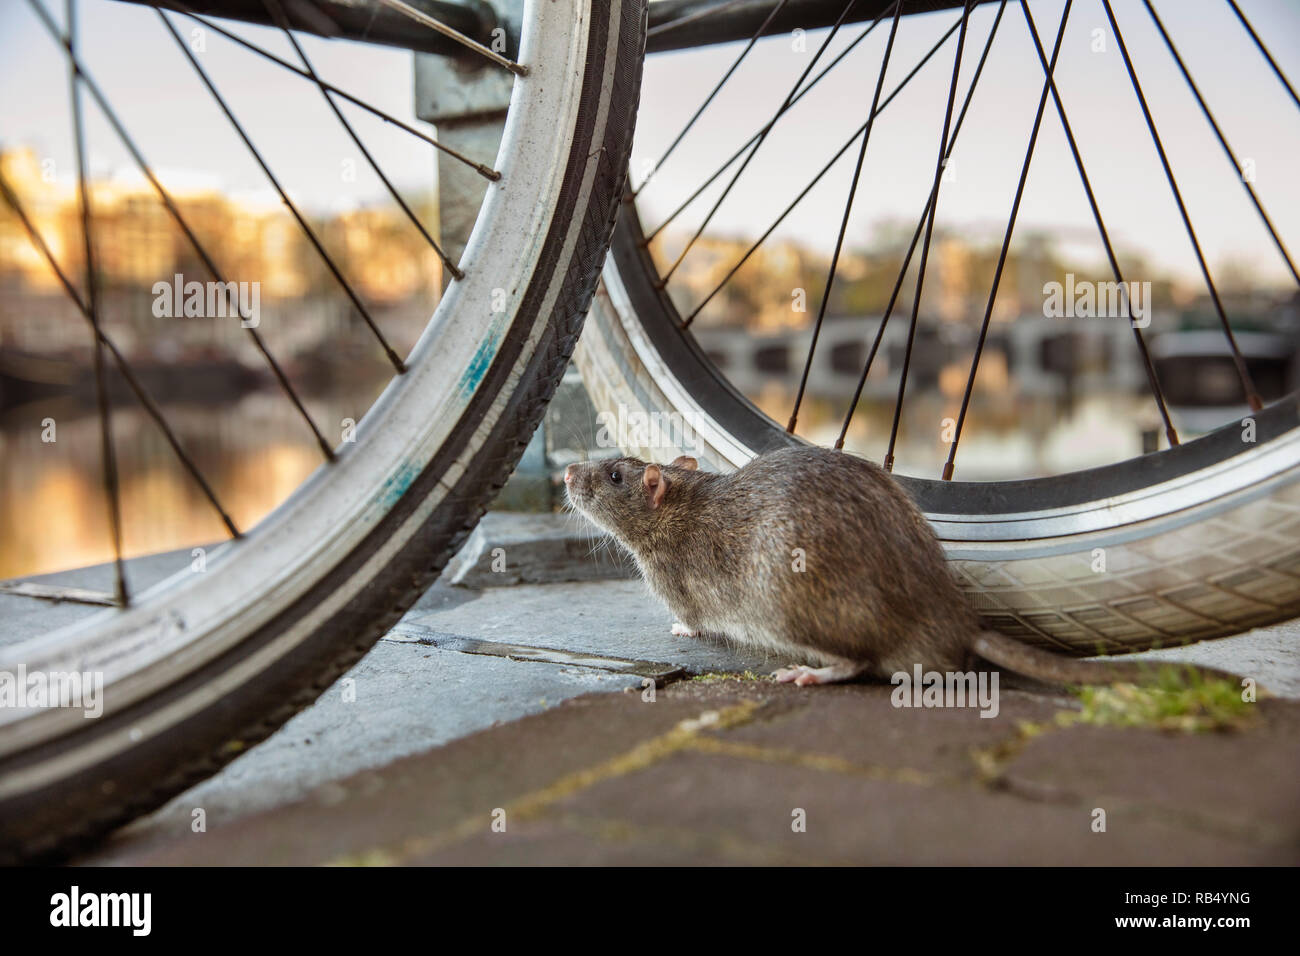 Les Pays-Bas, Amsterdam, le rat surmulot (Rattus norvegicus) sur location près de la rivière Amstel. Banque D'Images